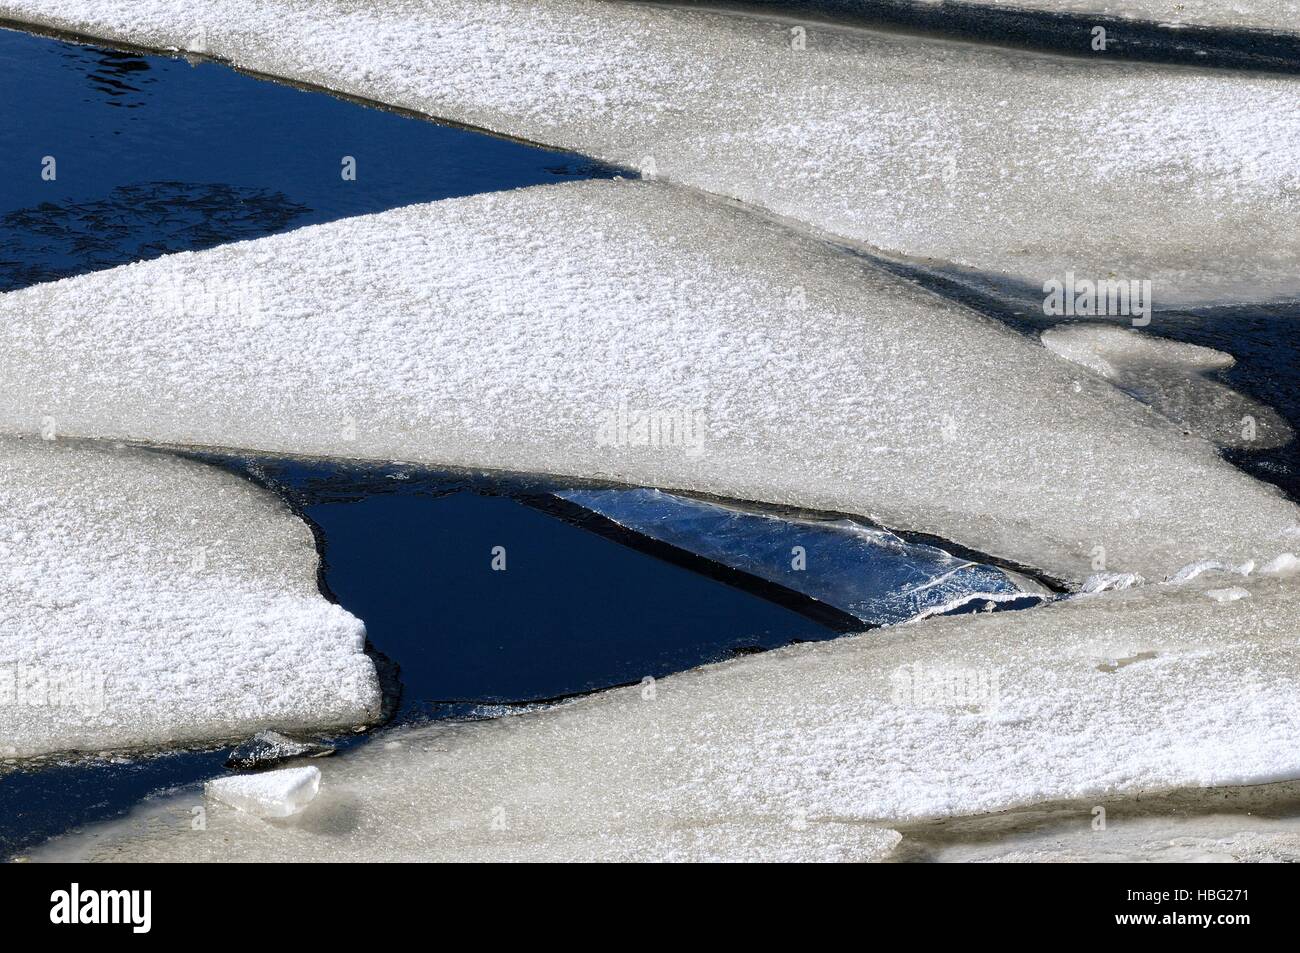 Sécurité dangereuses plaques de glace sur l'eau Banque D'Images